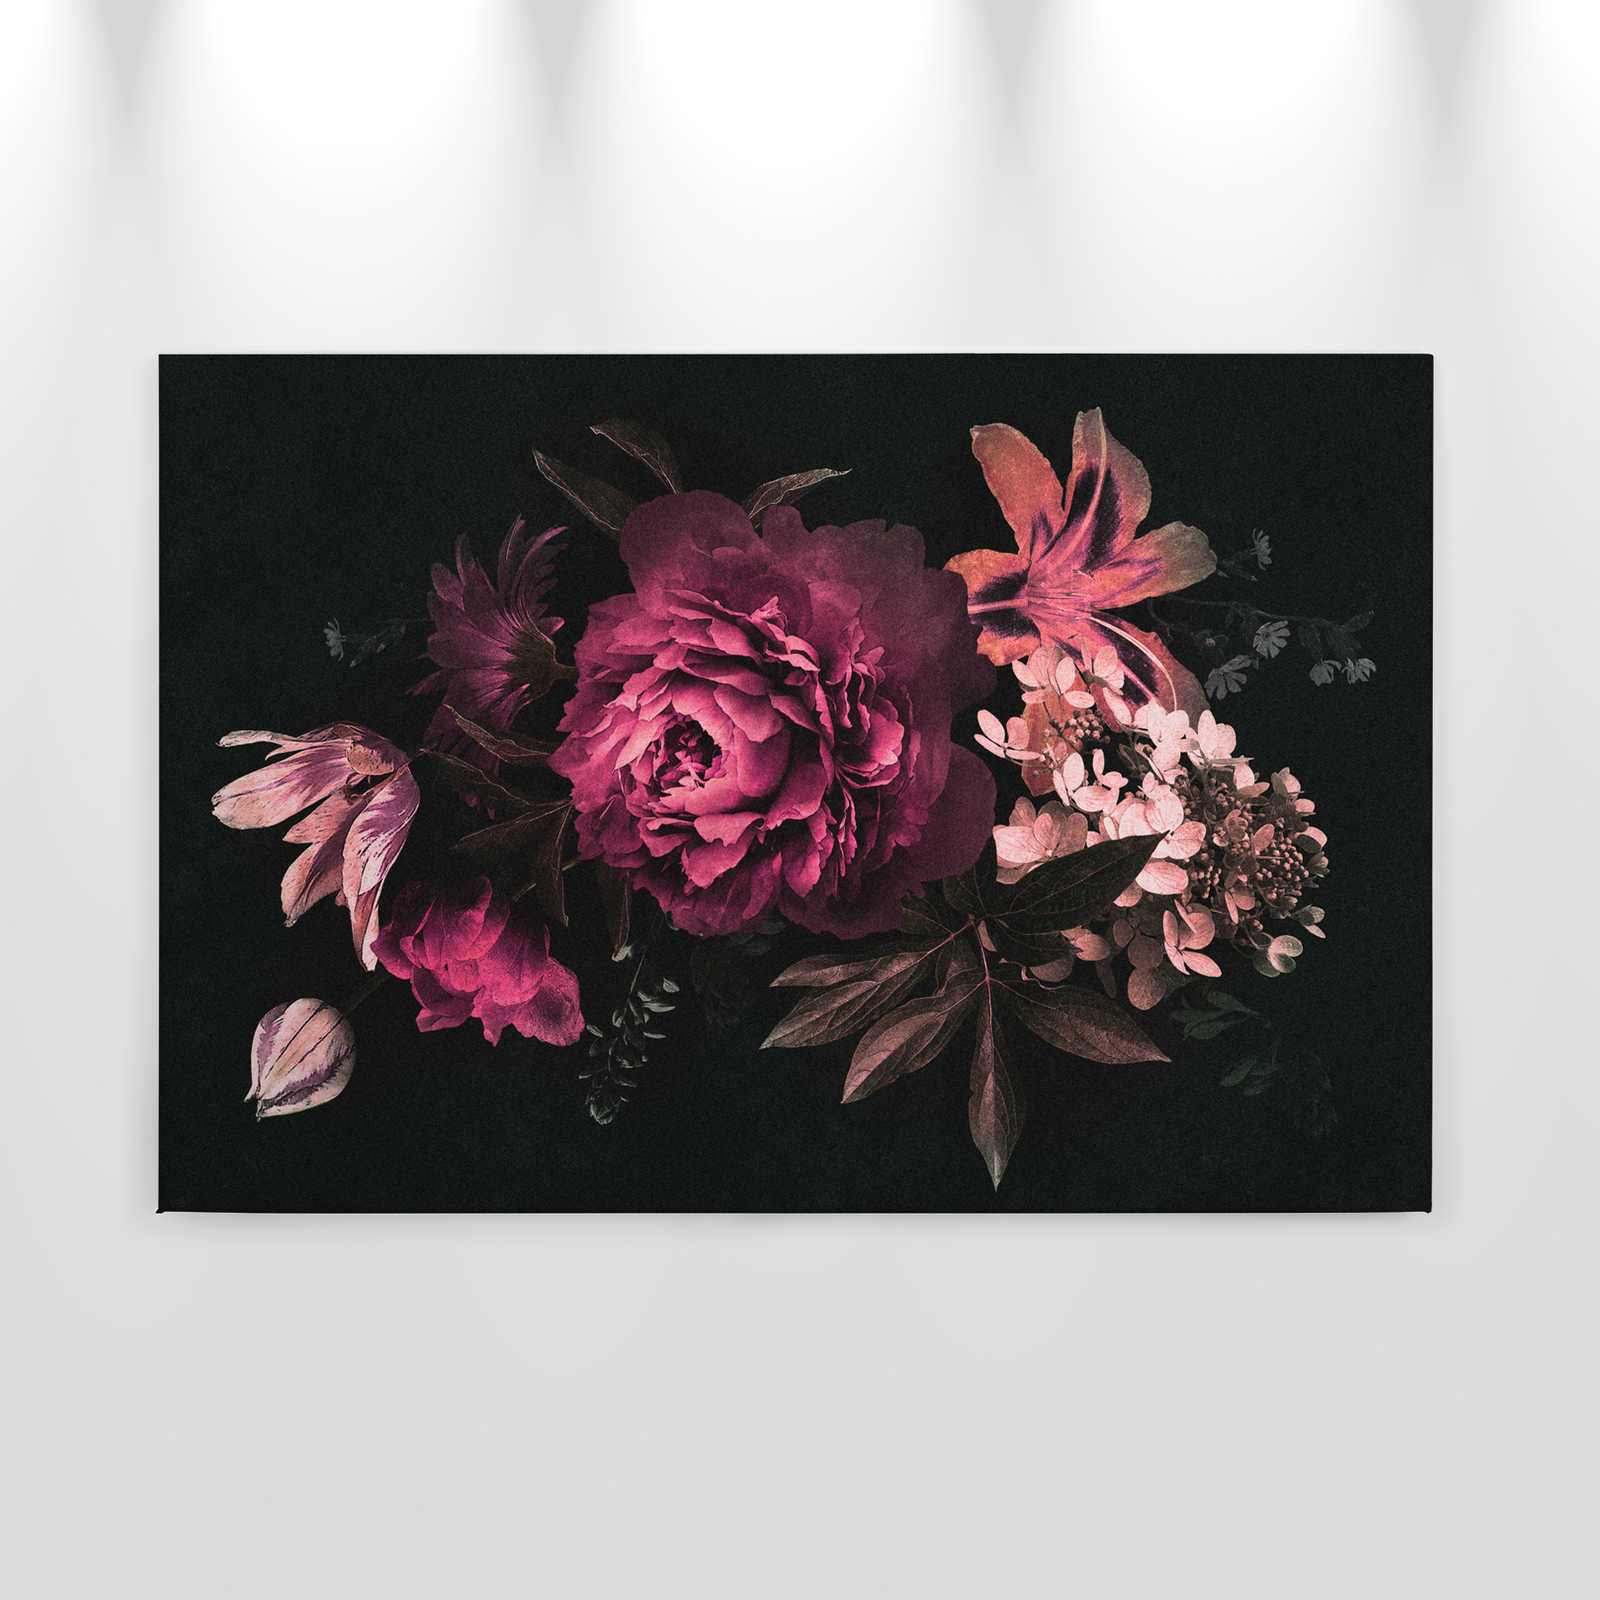             Drama queen 3 - Pintura en lienzo ramo de flores romántico- Estructura de cartón - 0,90 m x 0,60 m
        